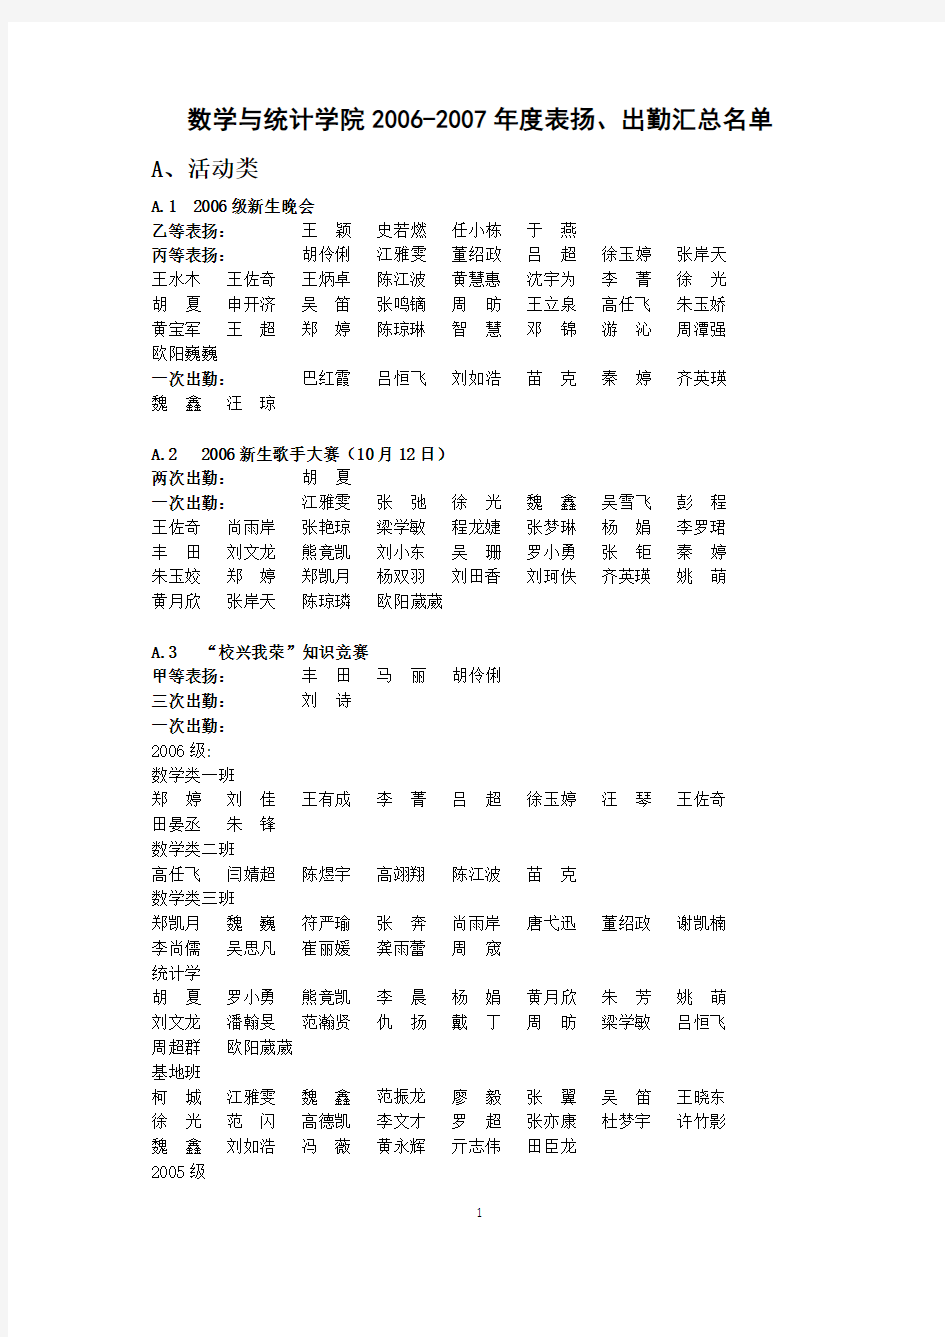 数学与统计学院2002007年表扬-武汉大学数学与统计学院